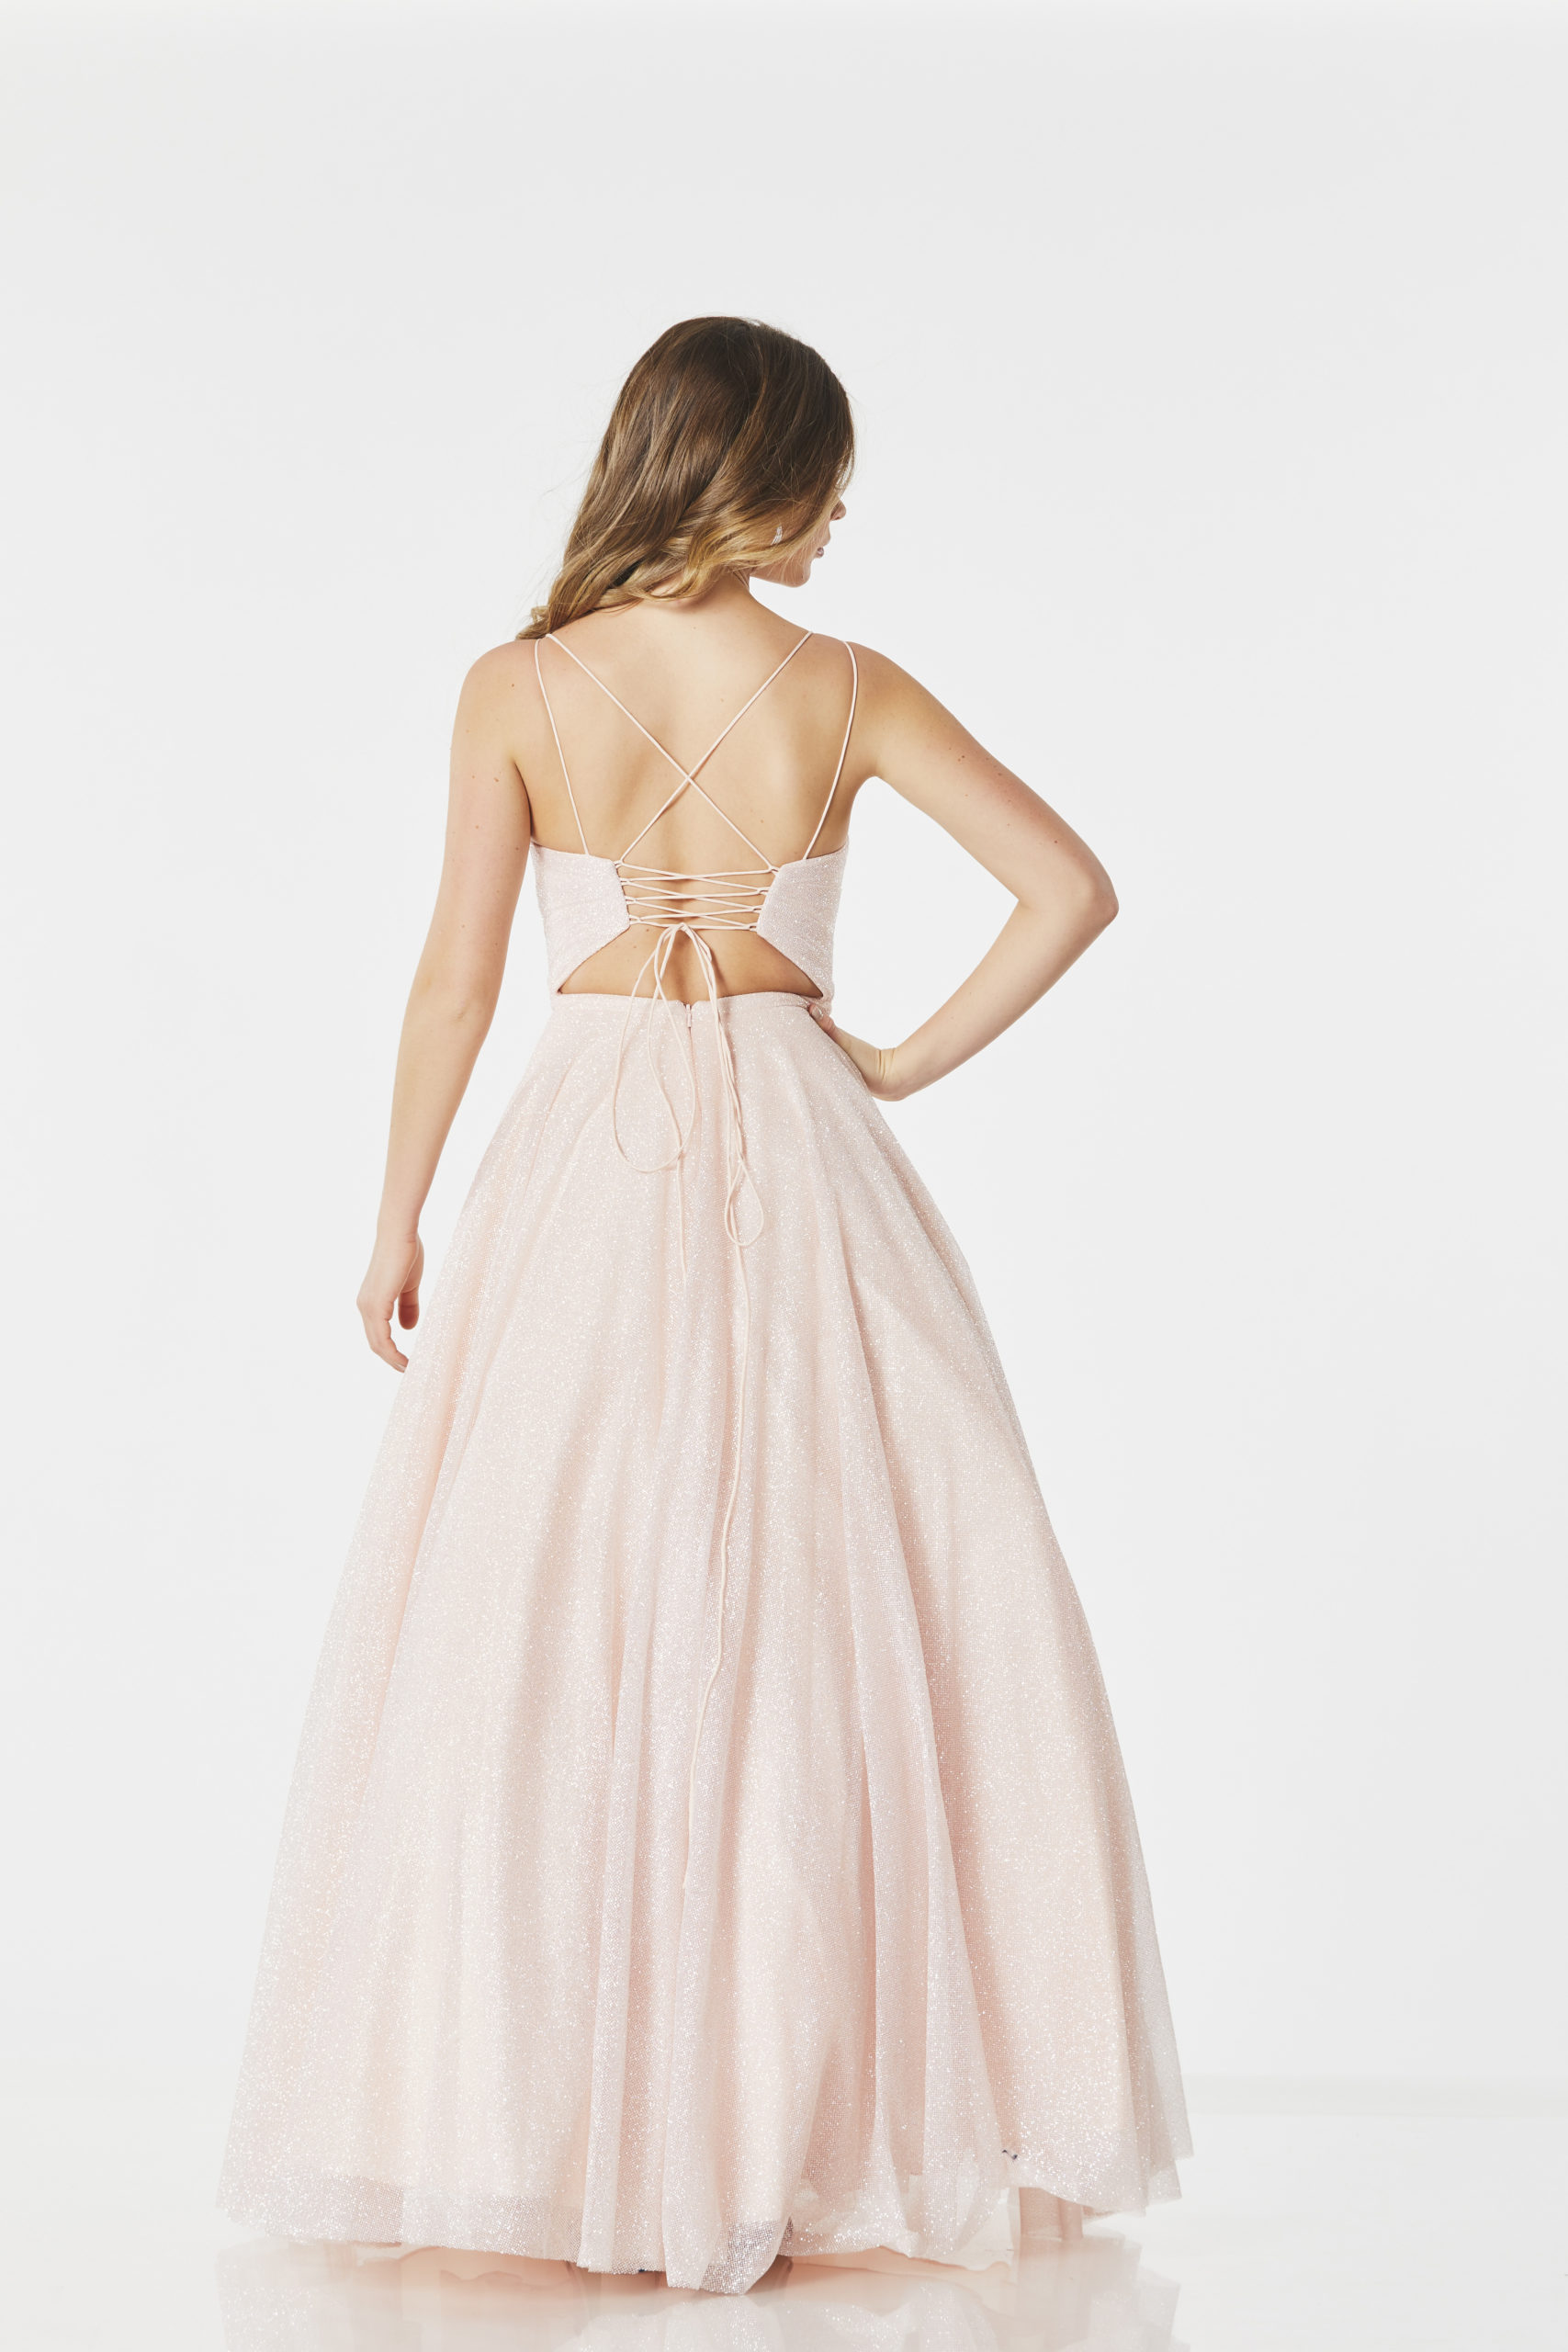 Tiffanys Prom Jordan | Wedding Dresses Sussex - Bridal Shop - Bridal ...